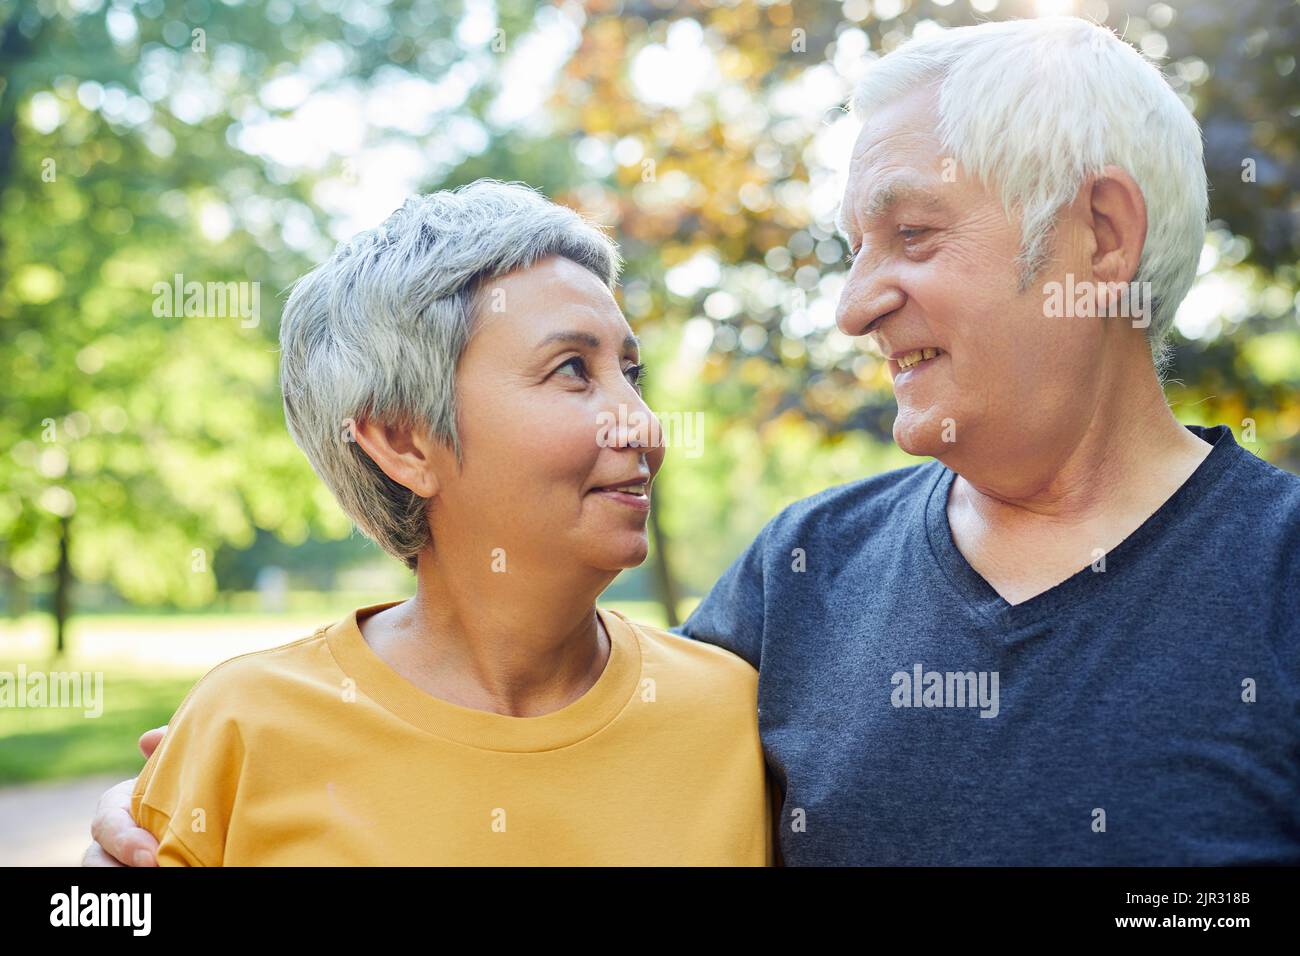 Ziemlich multirassische ältere Menschen 60s Paar Spaziergang im Park lächelnd einander mit Zärtlichkeit und Liebe zu betrachten. Glückliche endlose Ehe, romantische re Stockfoto